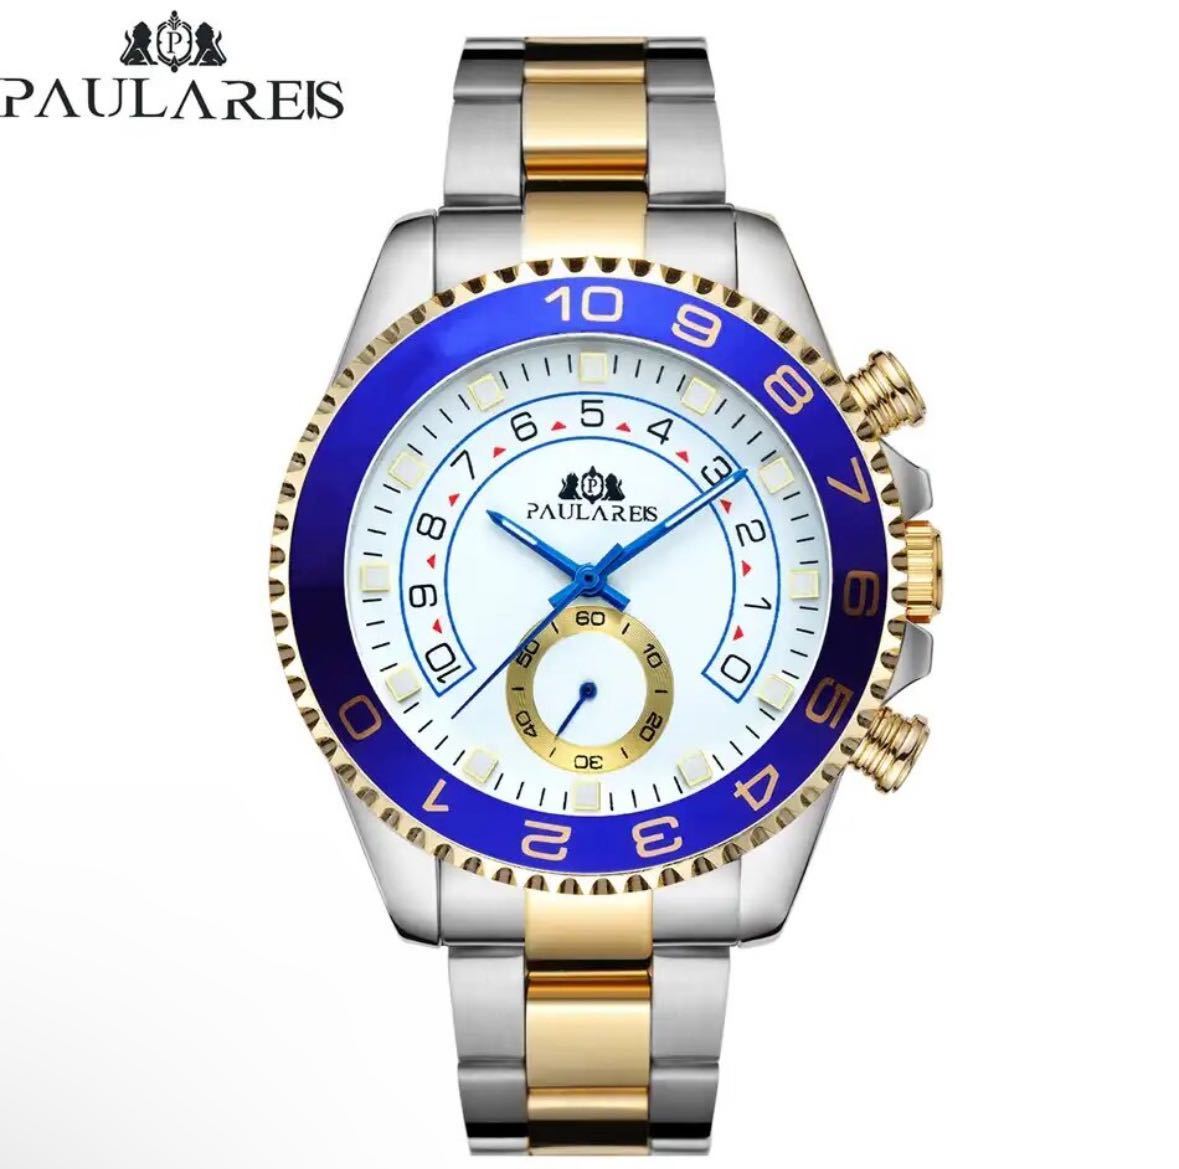 [ в Японии не продается America цена 30,000 иен ] PAULAREIS Yacht Master oma-ju Rolex oma-ju мужские наручные часы высококлассный наручные часы 